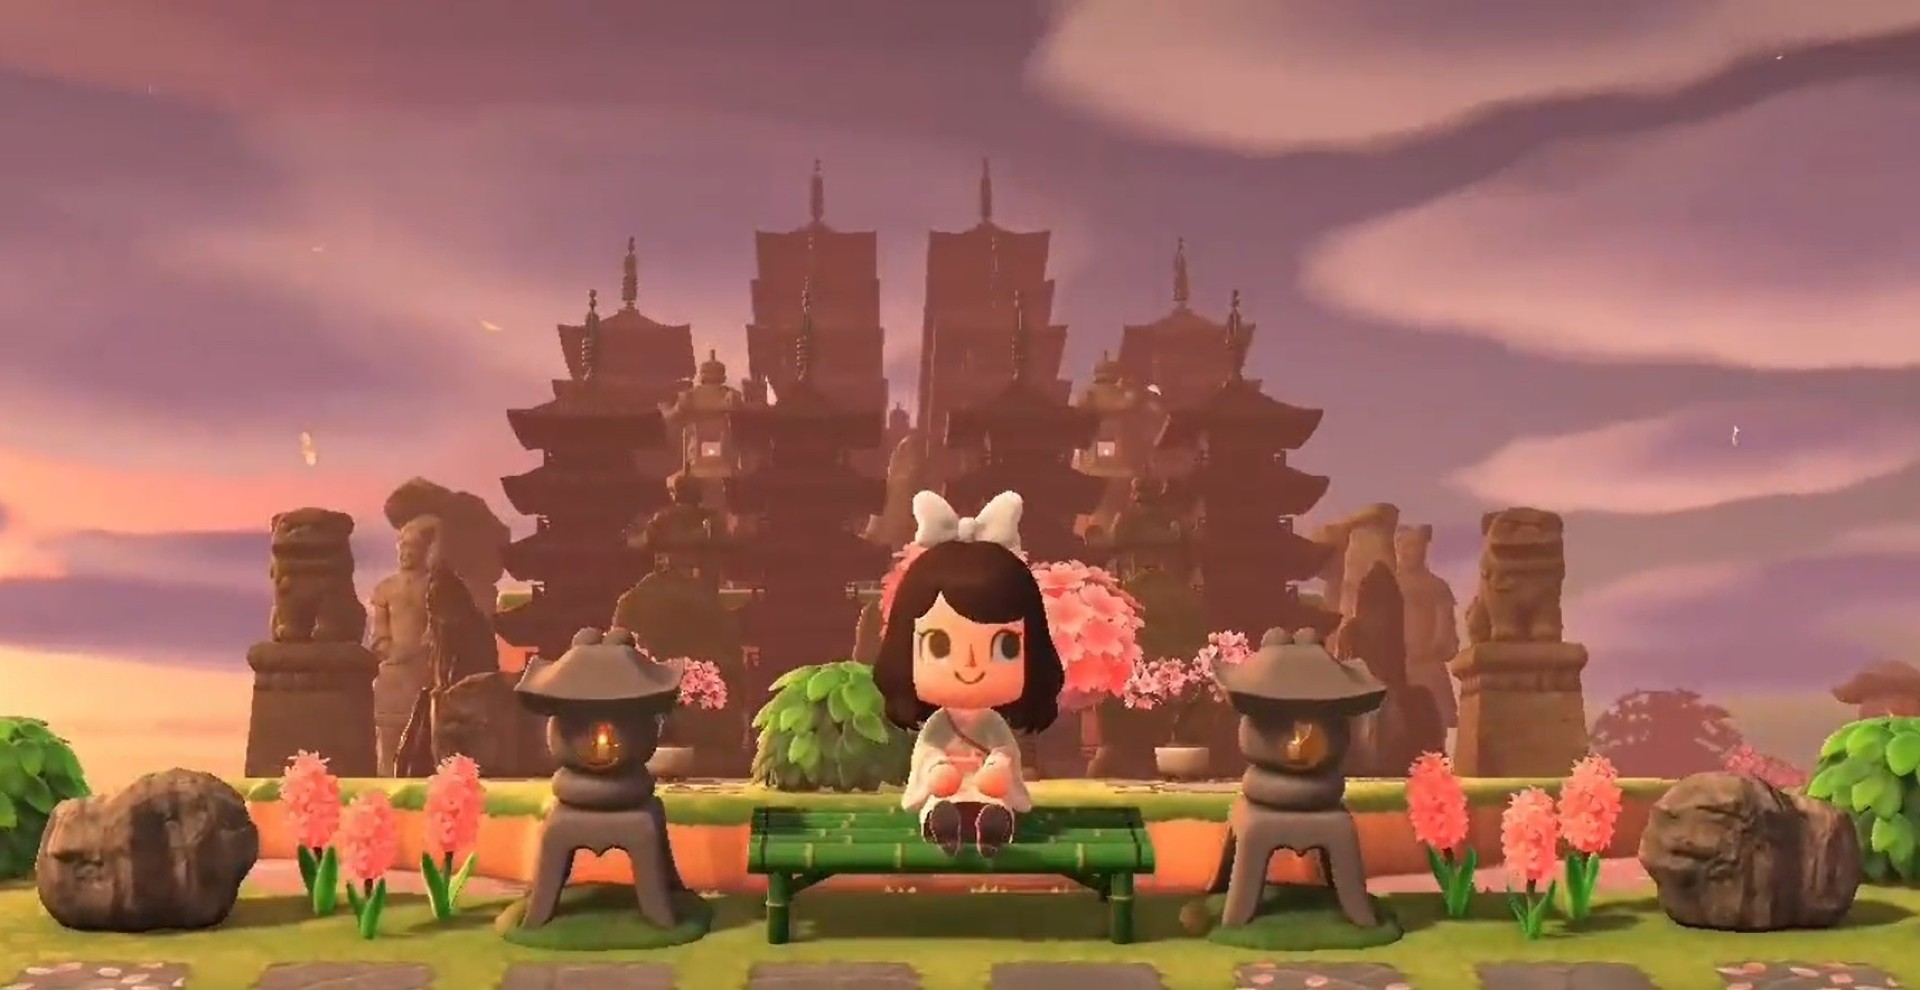 ผู้เล่น Animal Crossing ใช้เวลากว่า 2 ปี ตกแต่งเกาะกลายเป็นอายธรรมญี่ปุ่นโบราณ